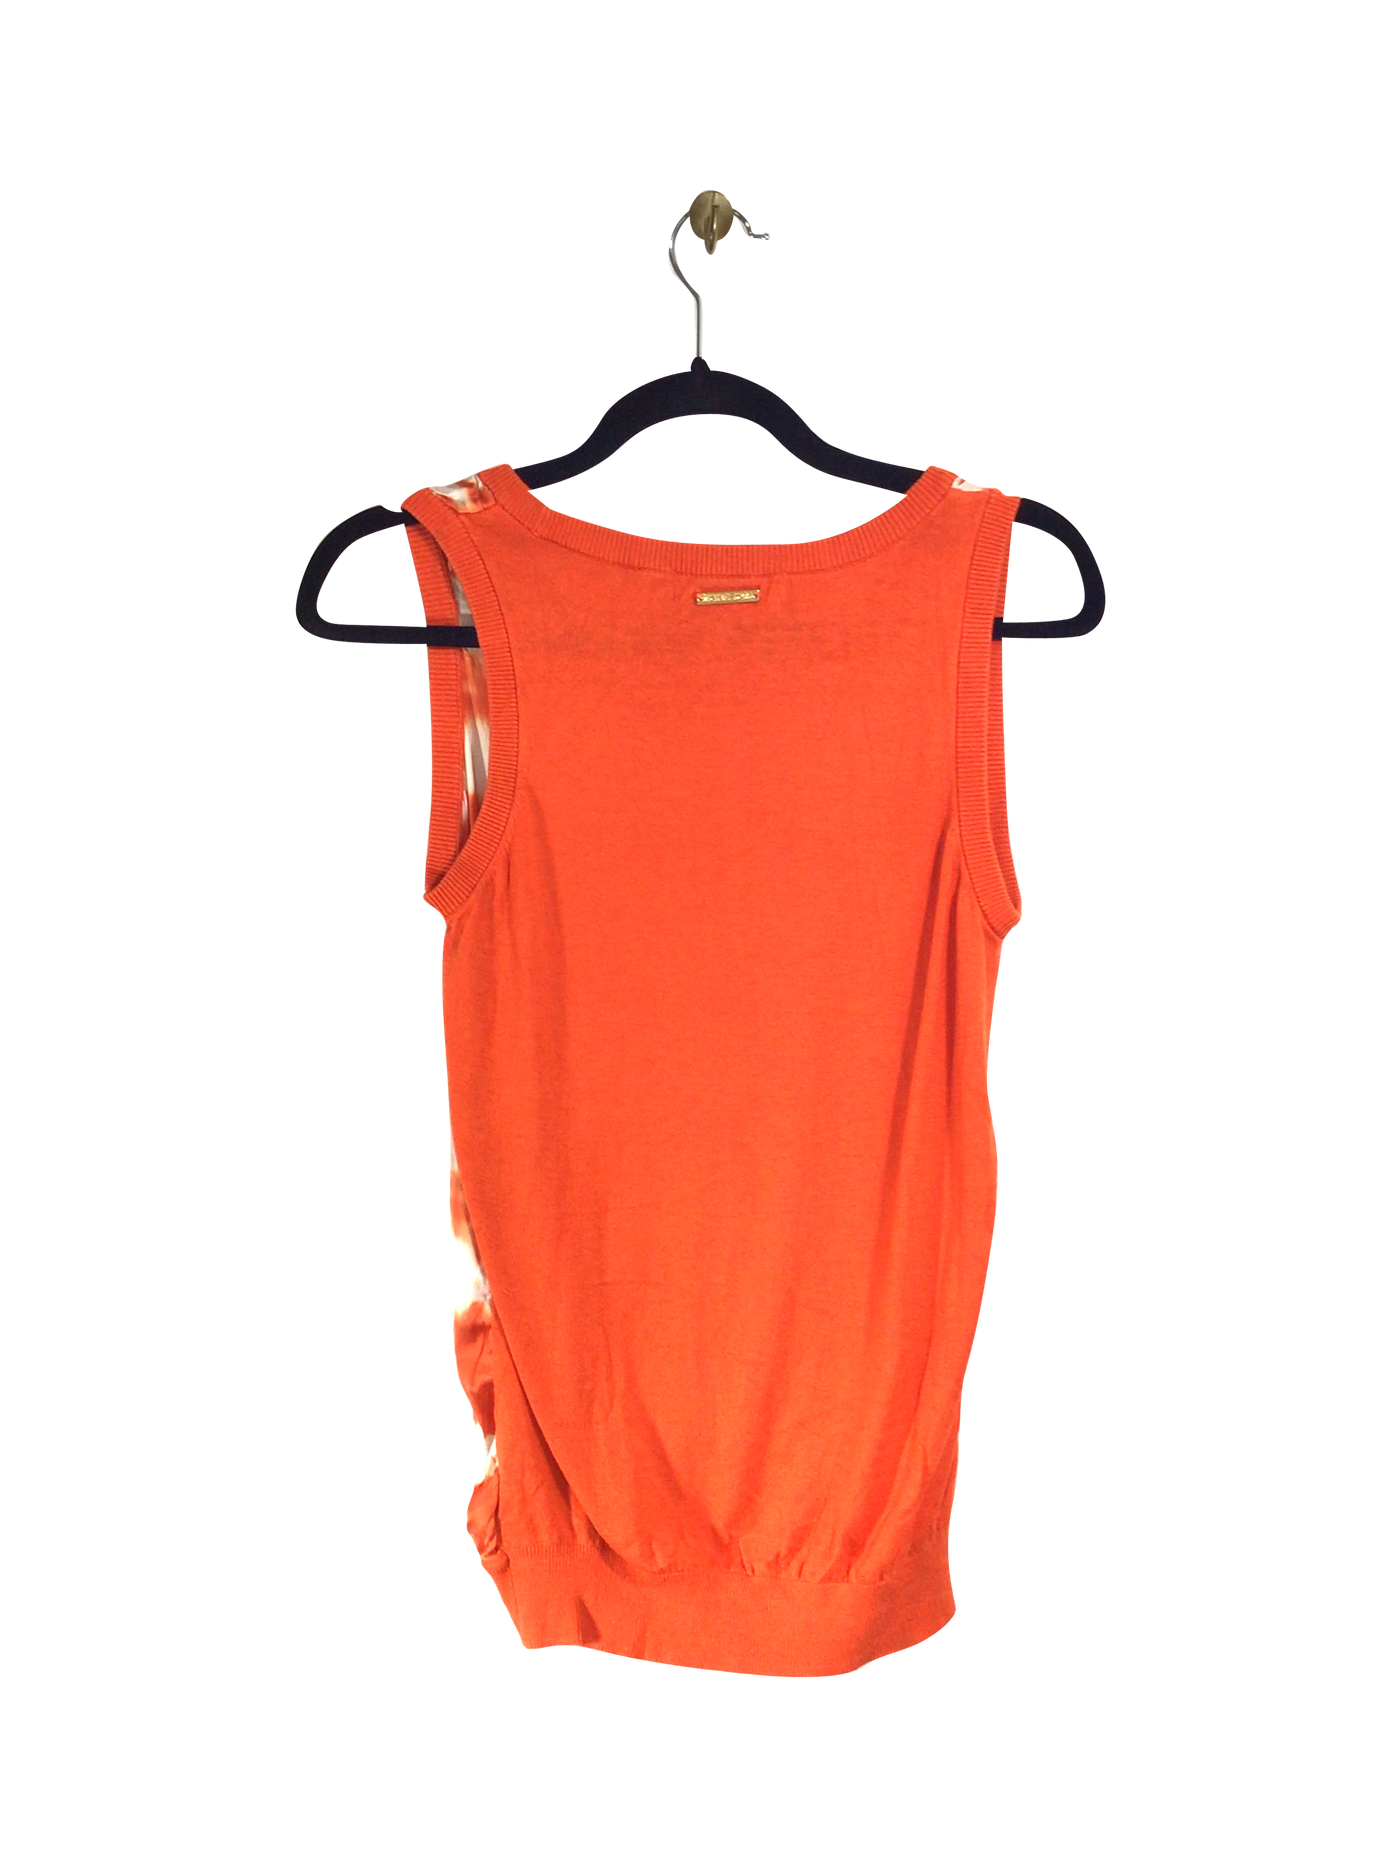 MICHAEL KORS Tank Top Regular fit in Orange - Size S | 65 $ KOOP